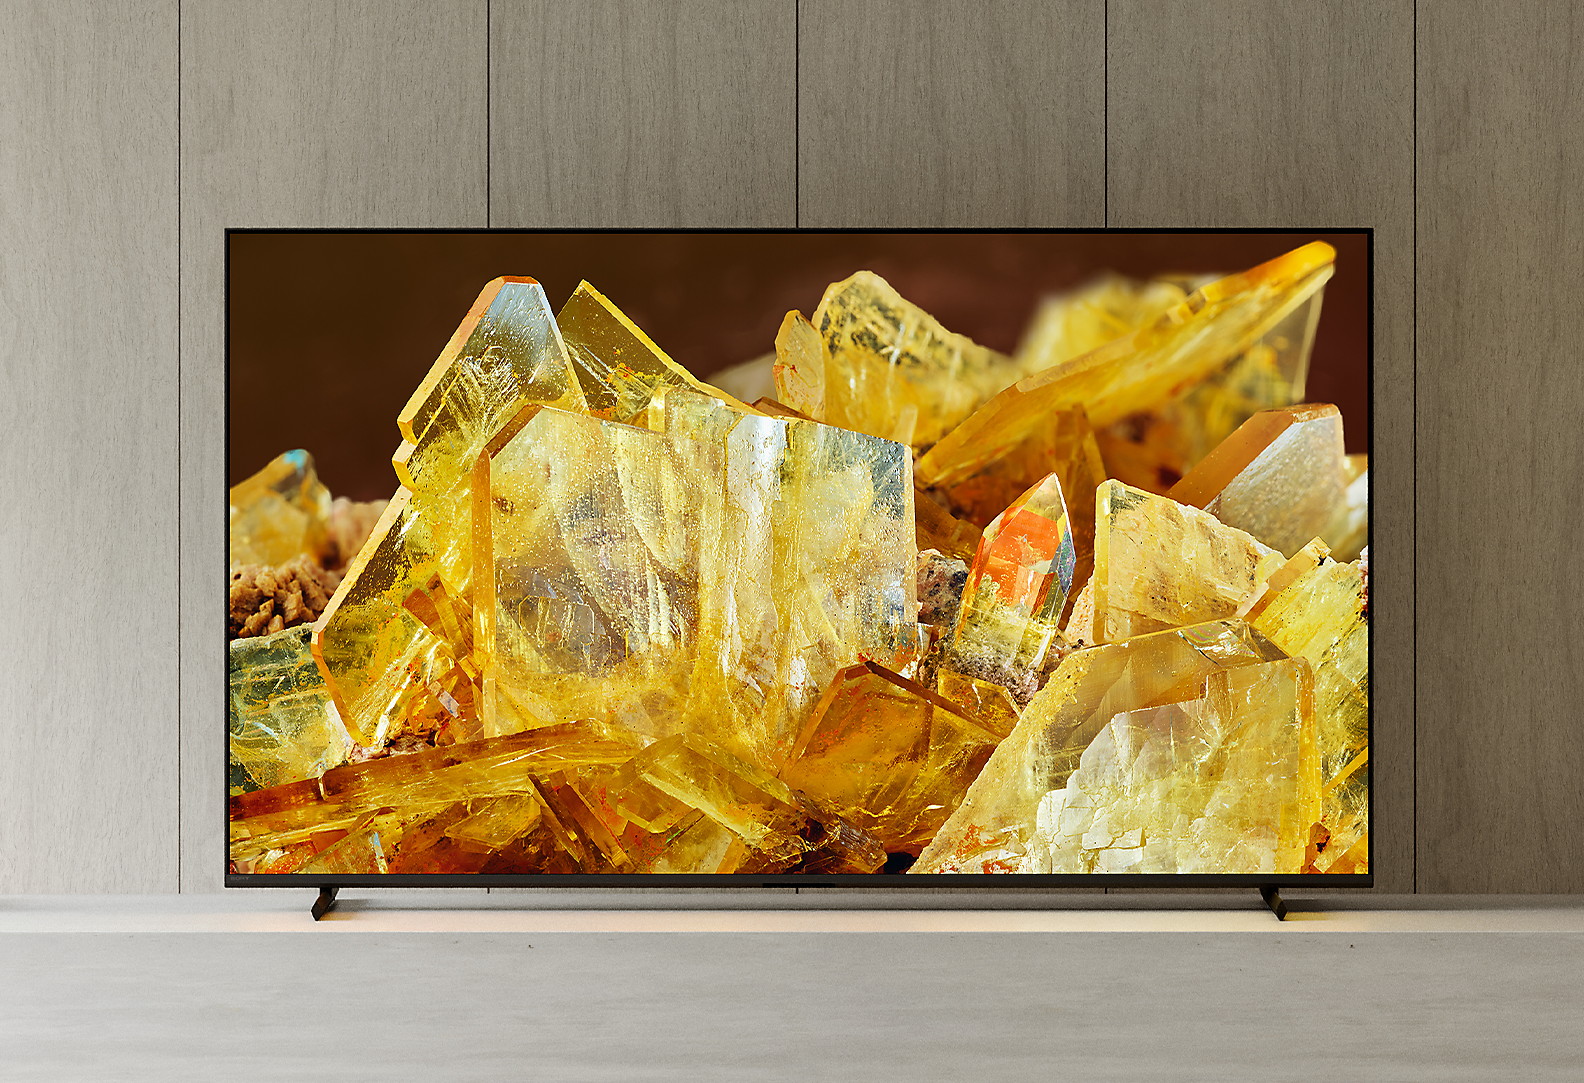 BRAVIA XR-TV i en stue med nærbilde av gule krystaller på skjermen